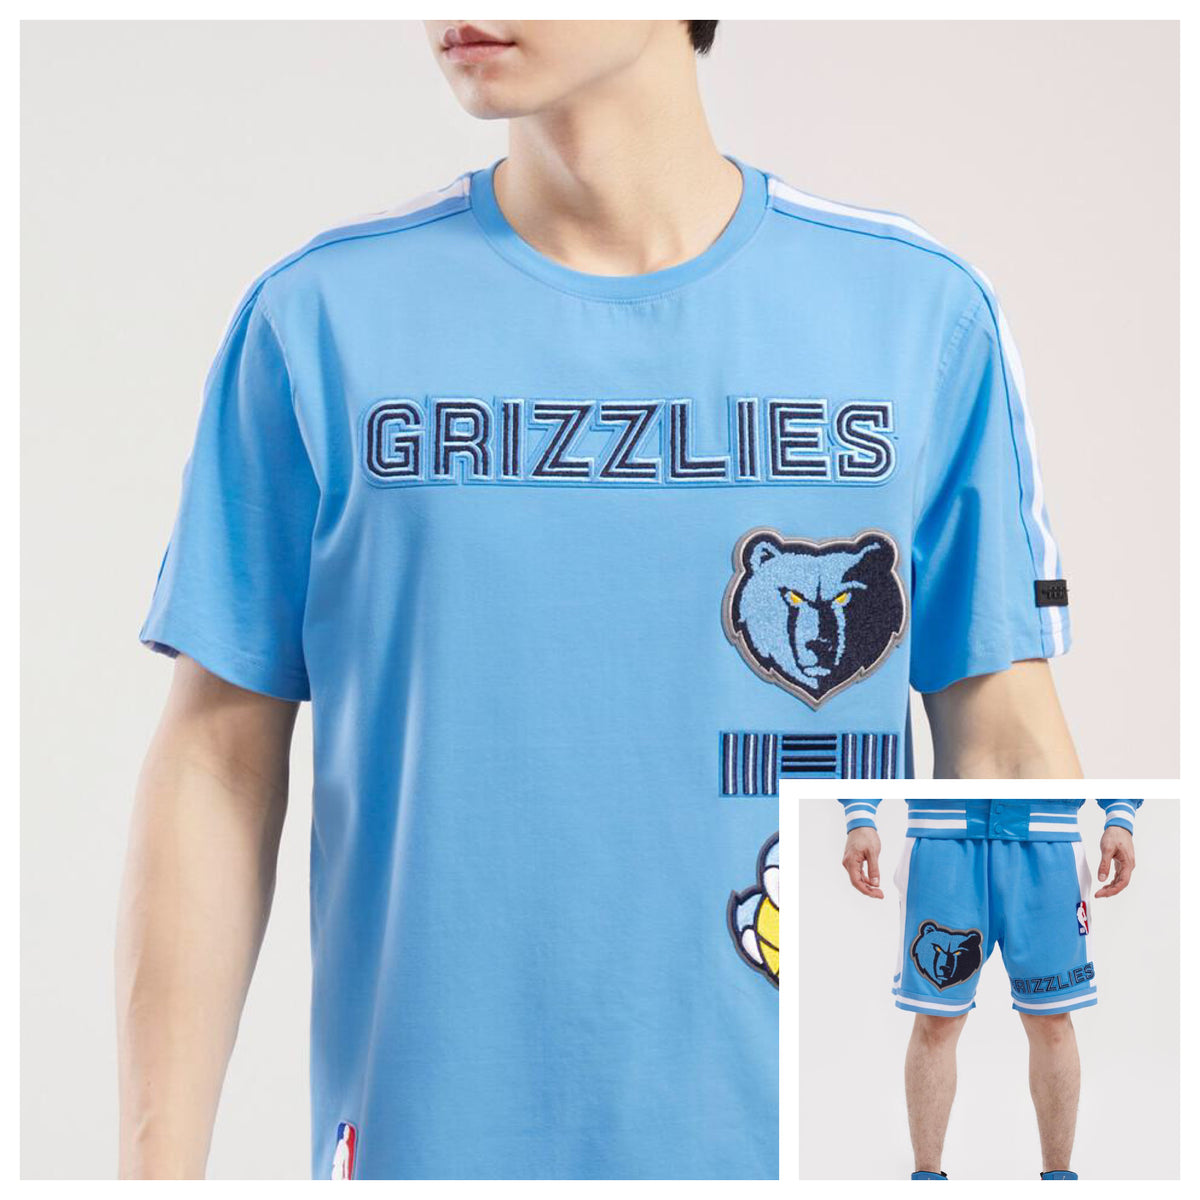 Pro Standard - Memphis Grizzlies Retro Classic Striped Set - University Blue